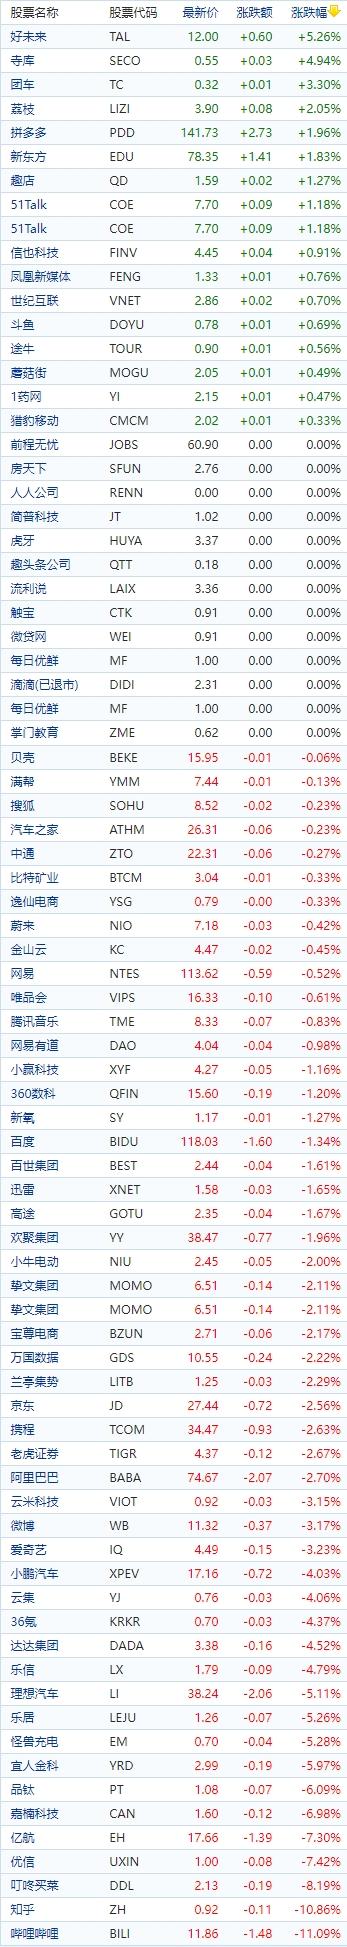 中国概念股收盘：涂鸦智能涨超6%，哔哩哔哩跌超11%、知乎跌超10%